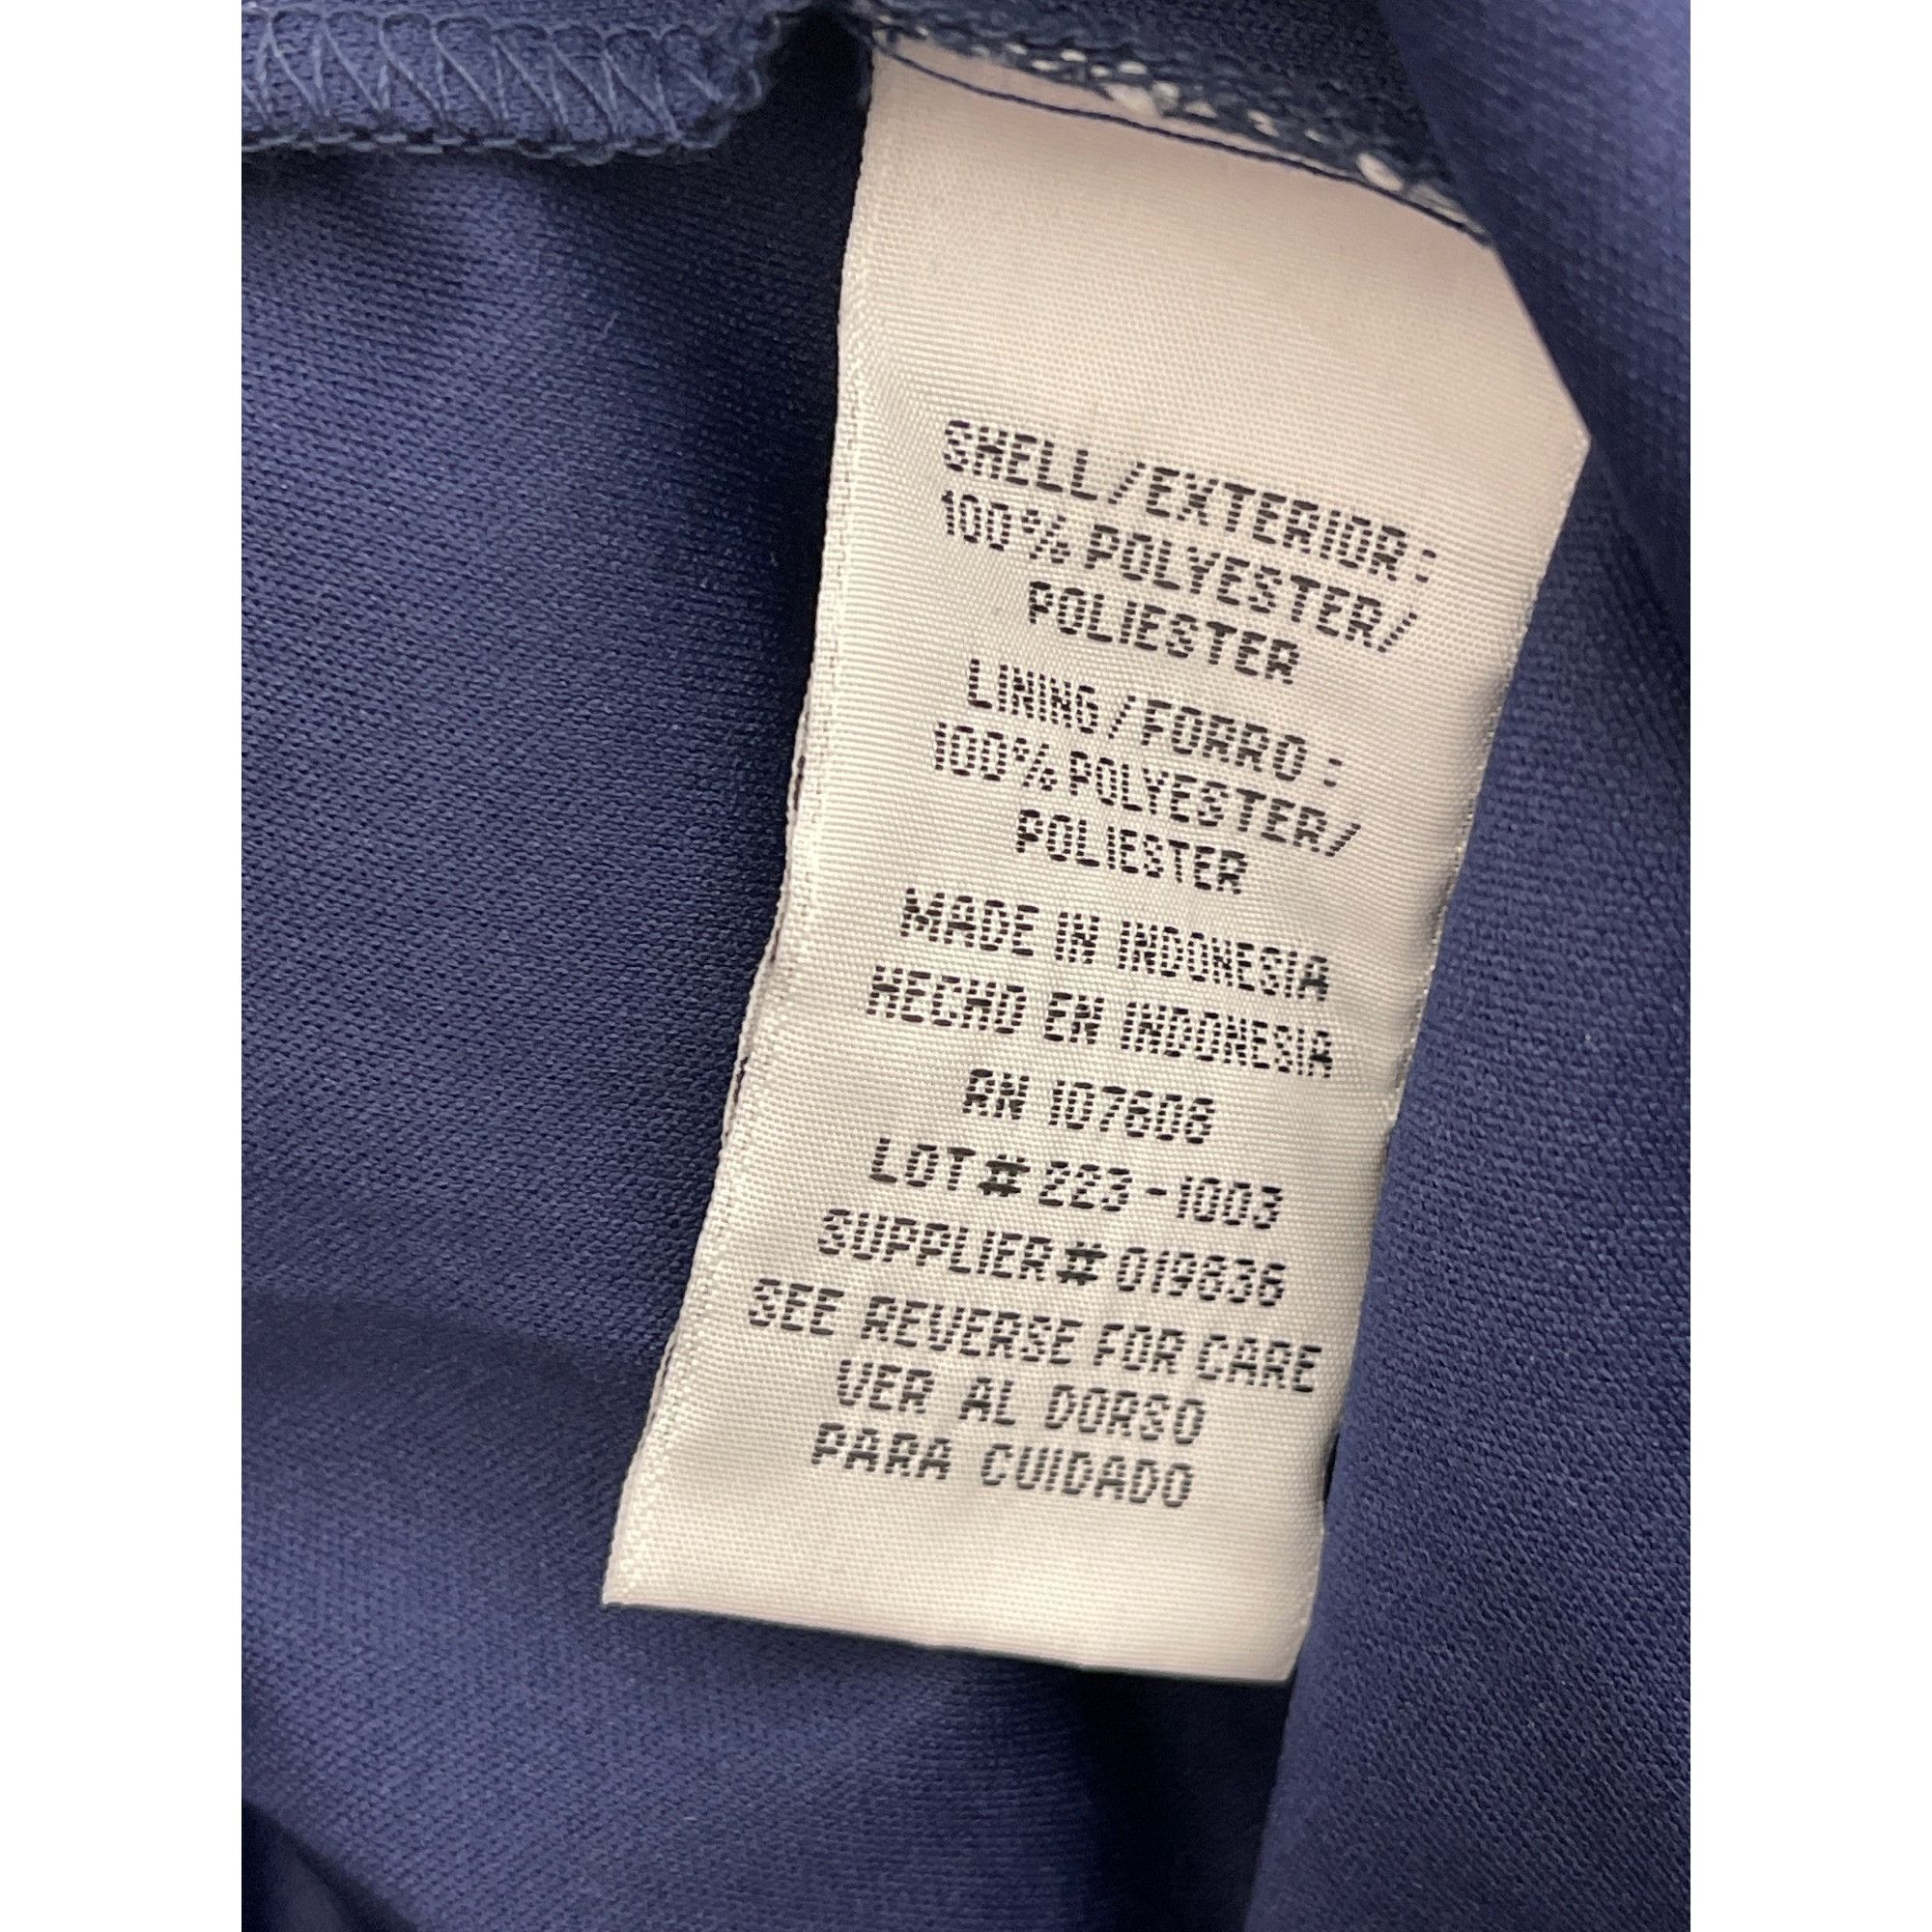 Other R & K Navy Blue Floral Print Maxi Dress Size 18 Size XXL / US 16-18 / IT 52-54 - 8 Thumbnail